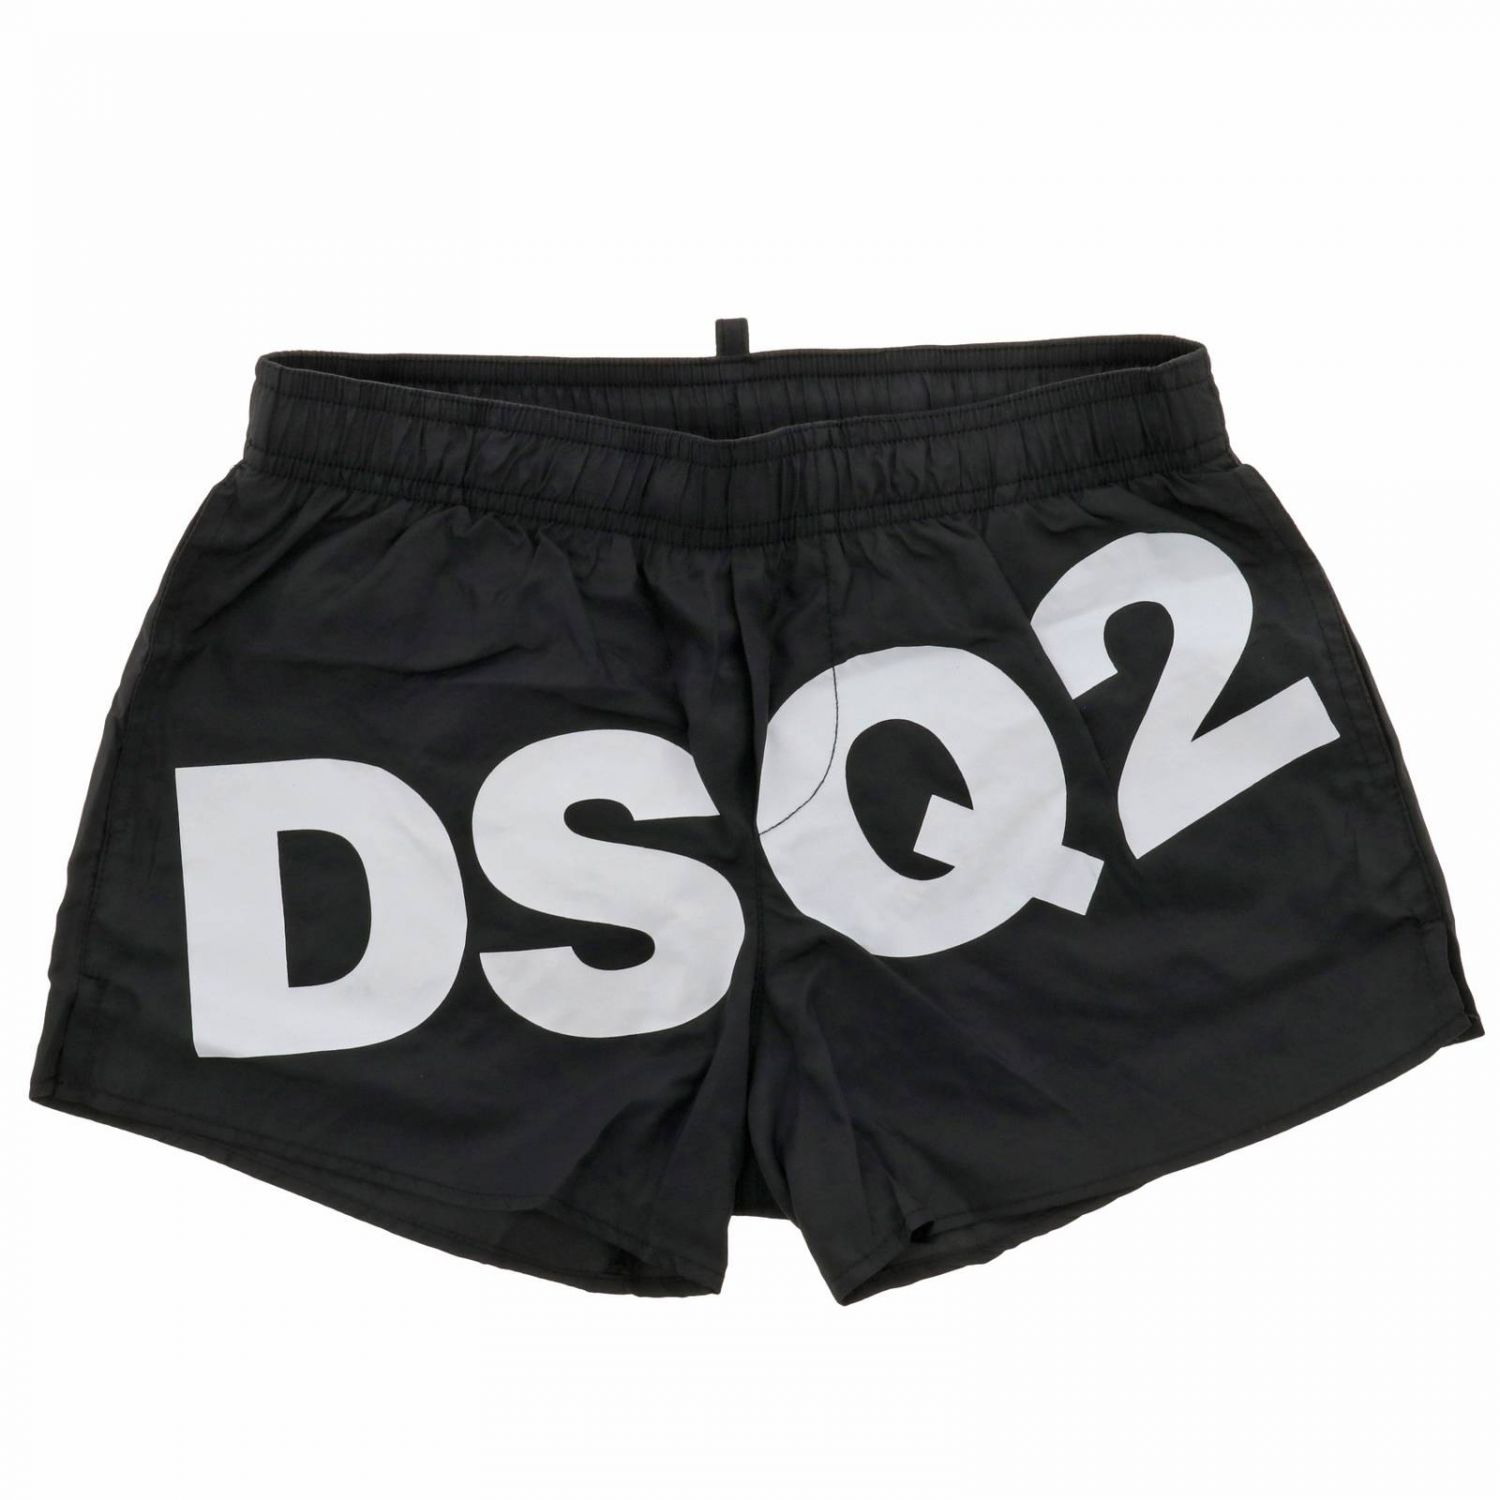 dsq2 swimwear